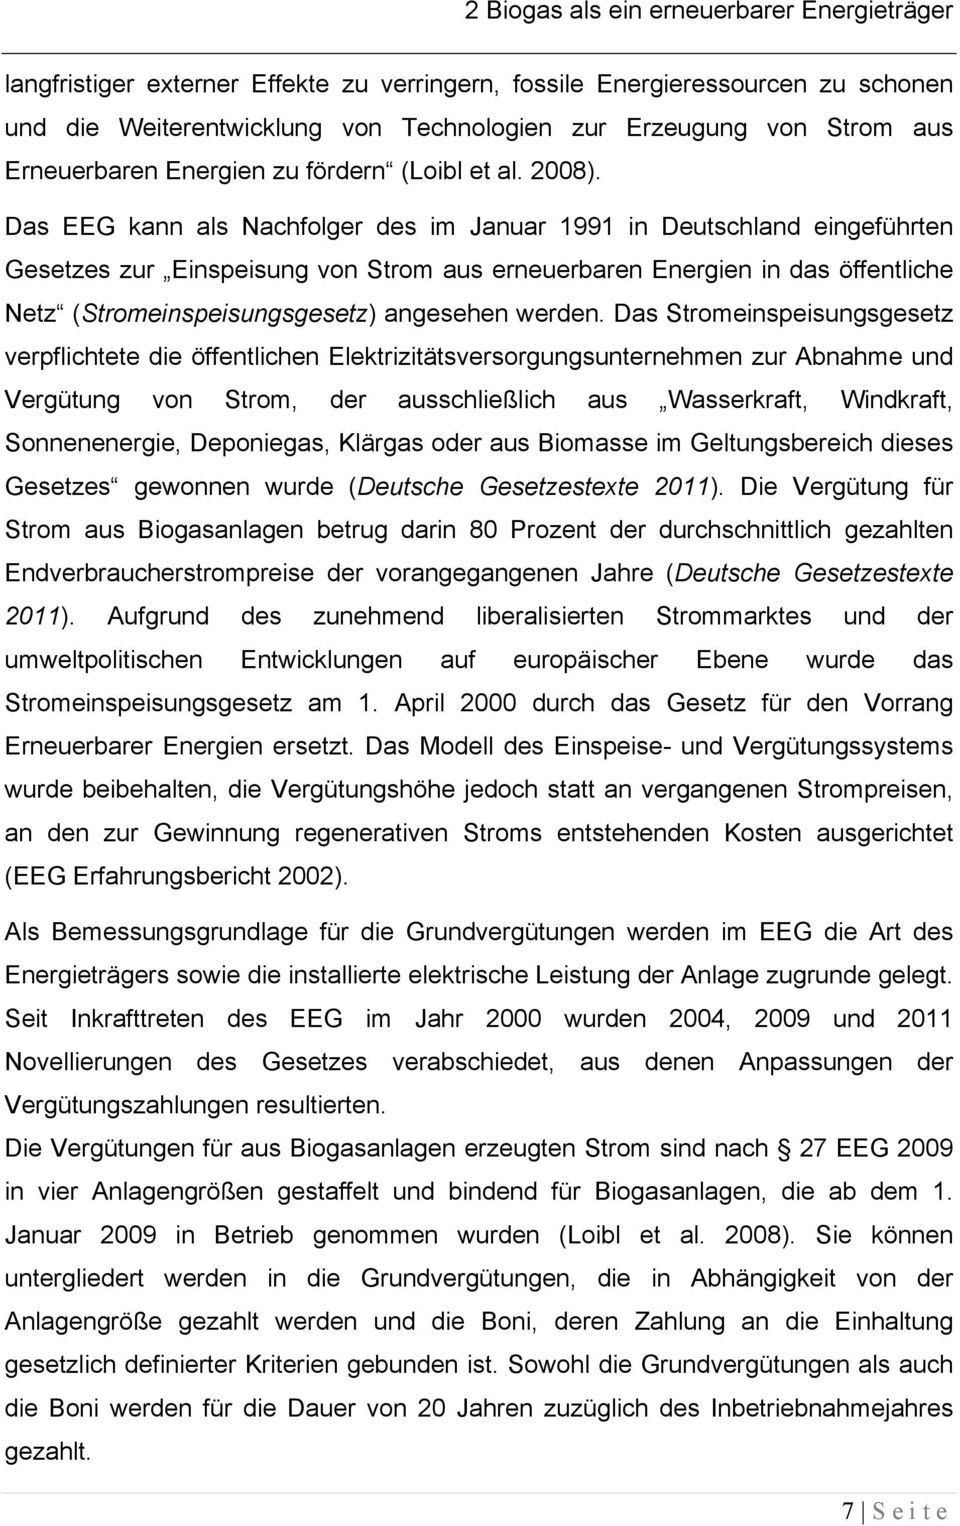 Das EEG kann als Nachfolger des im Januar 1991 in Deutschland eingeführten Gesetzes zur Einspeisung von Strom aus erneuerbaren Energien in das öffentliche Netz (Stromeinspeisungsgesetz) angesehen